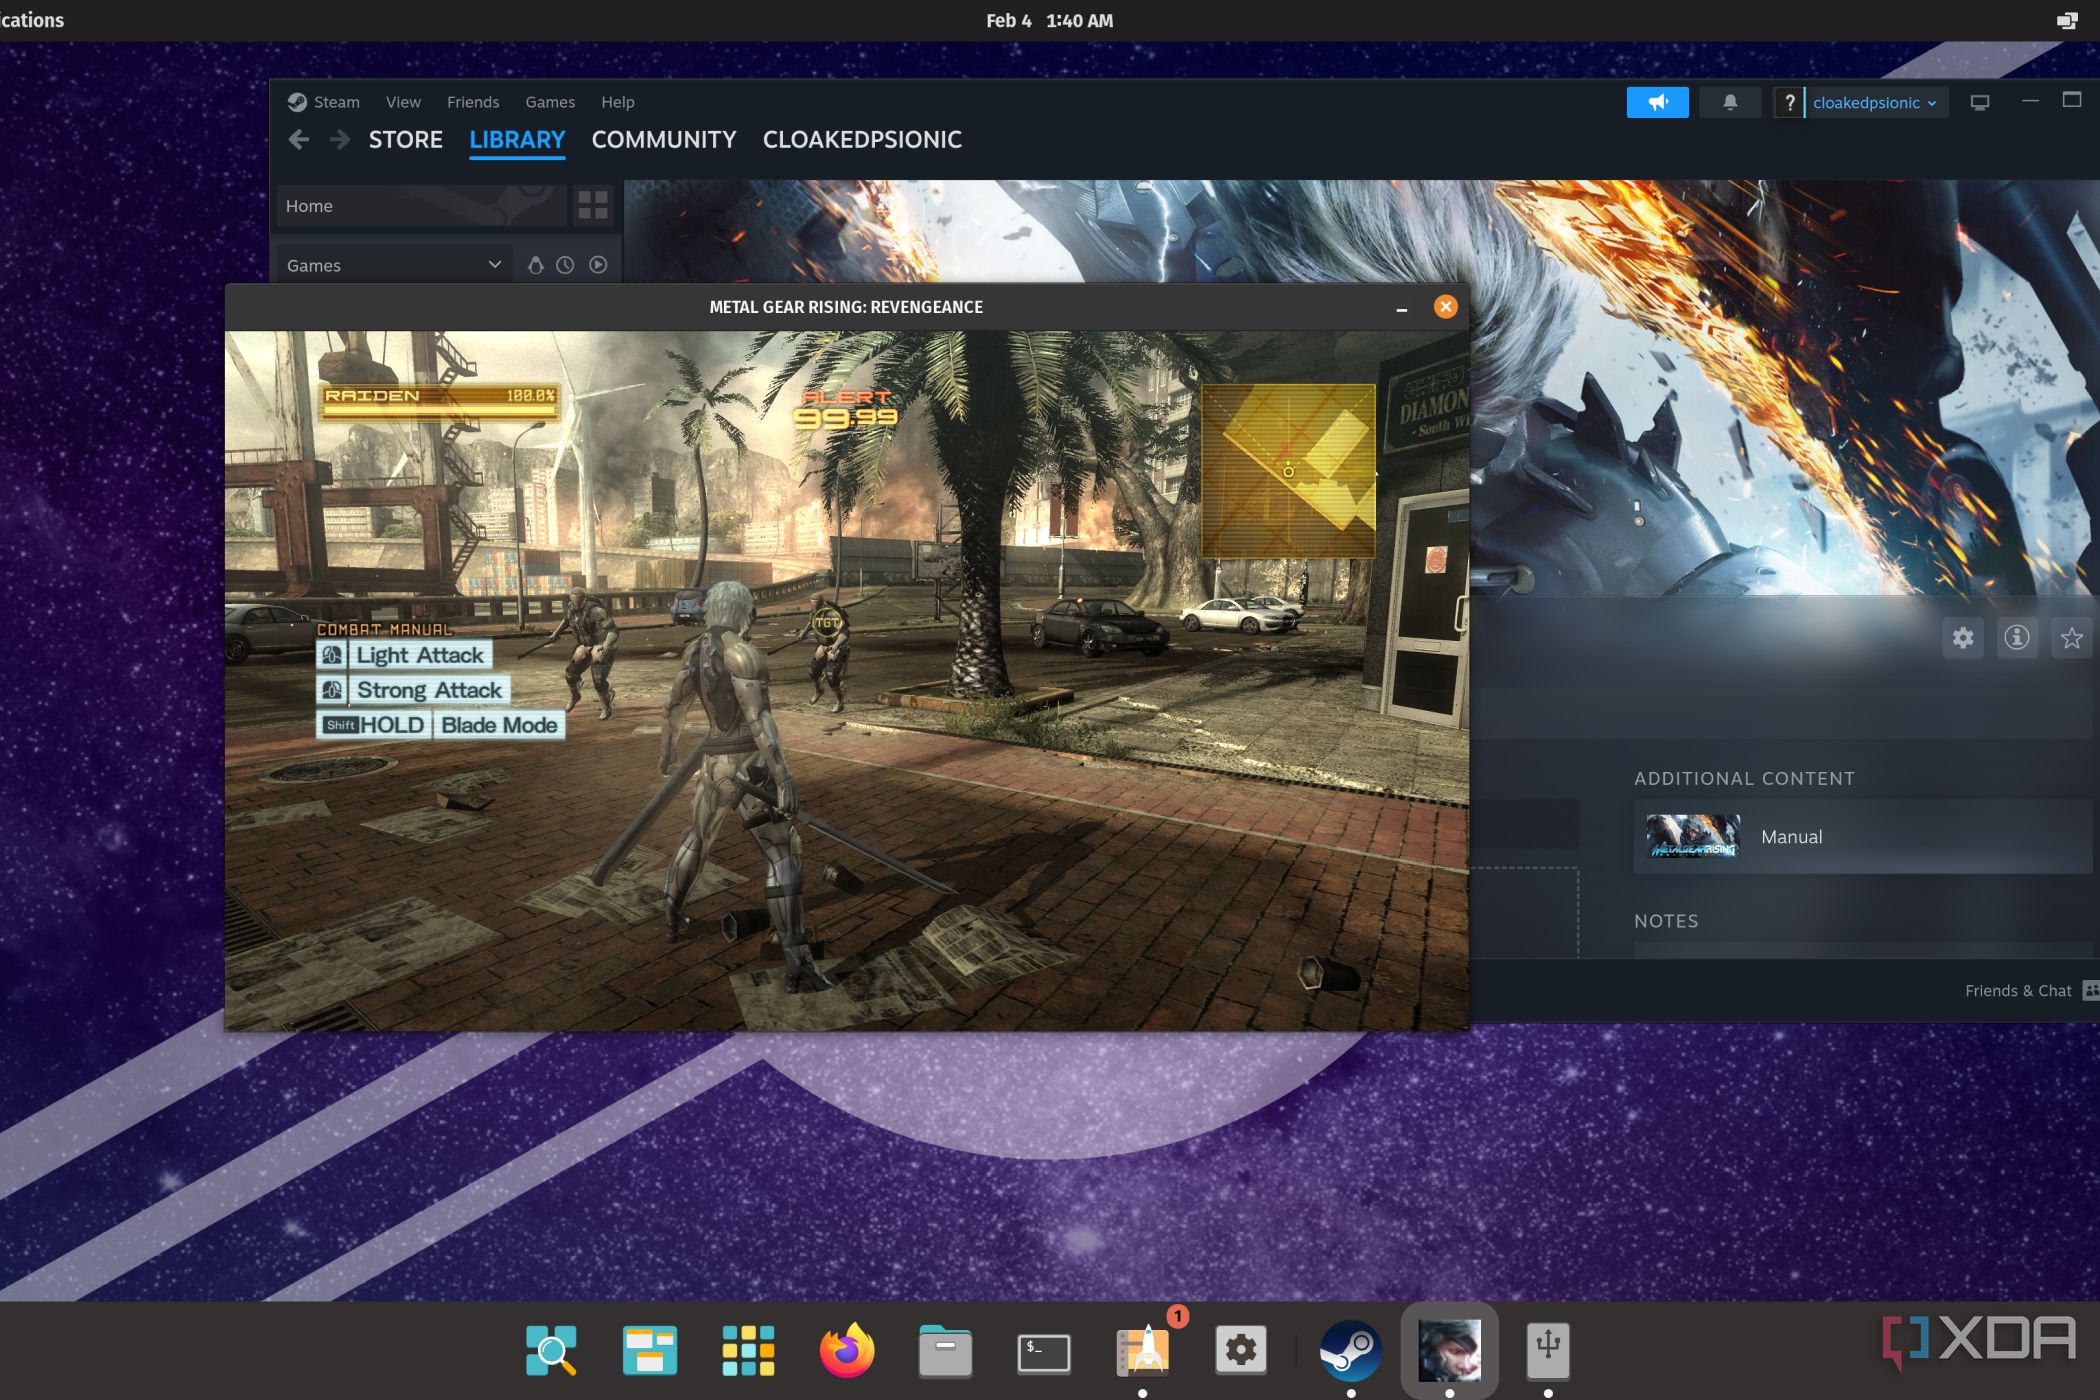 A screenshot of Metal Gear Rising Revengeance running on Linux